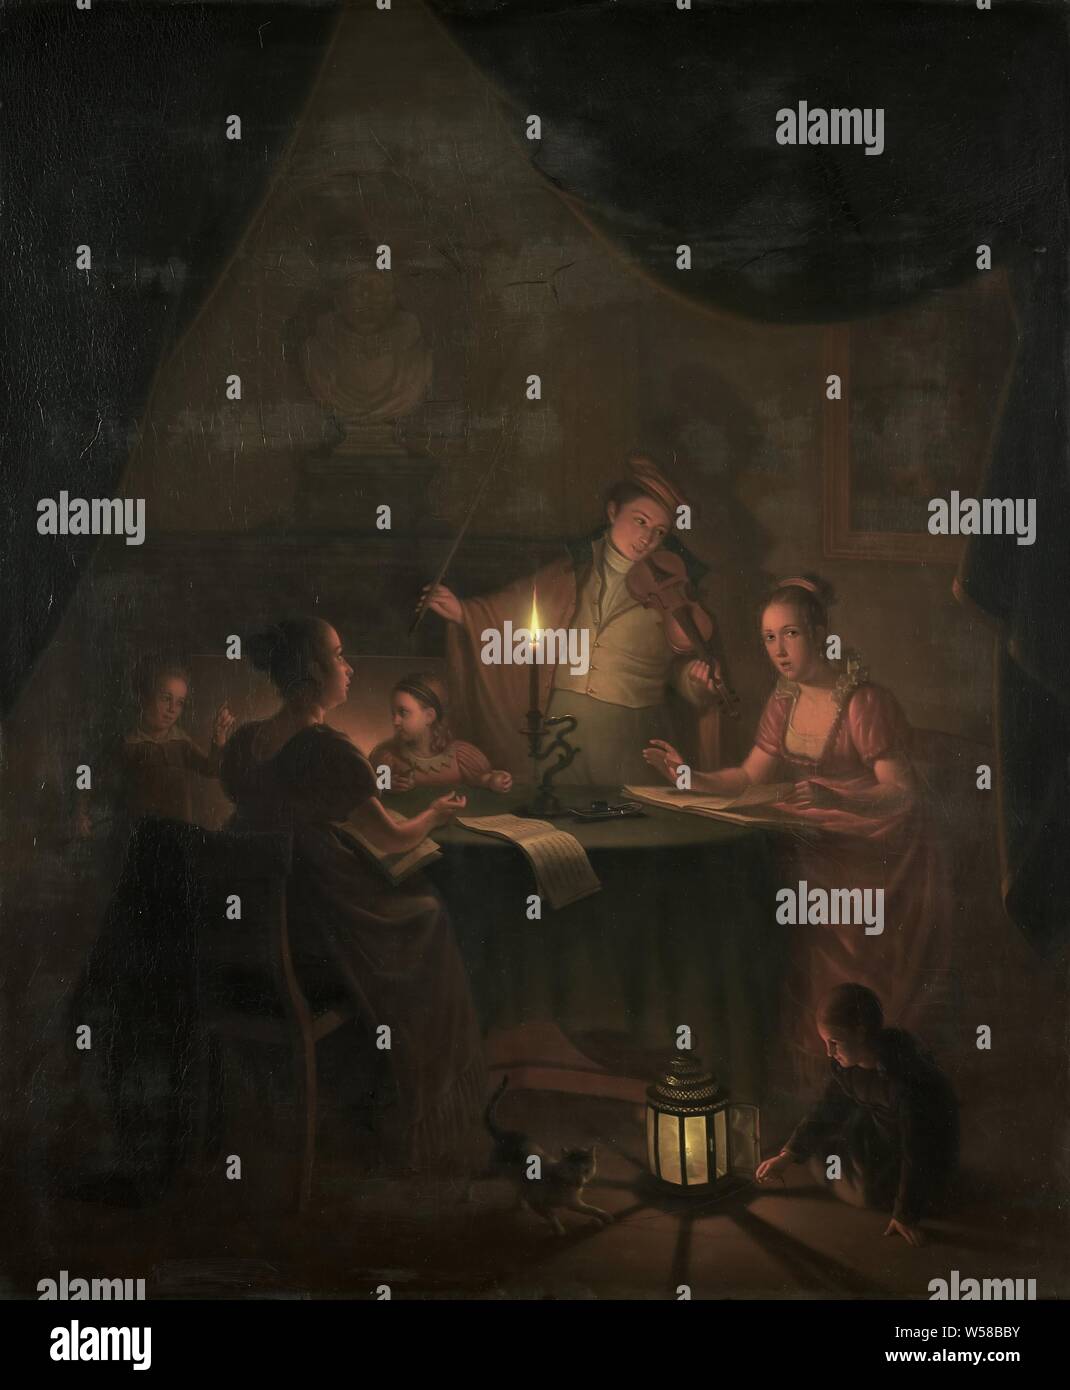 Une partie musicale à la chandelle, Société de musique à la chandelle. Intérieur avec un groupe de personnes qui font de la musique autour d'une table. Un garçon debout joue du violon, deux femmes chanter à partir de recueils. Une fille joue sur le sol à la lueur d'une lanterne avec un chat. Sur le mur à droite, une peinture au-dessus de la cheminée un buste., Michiel Versteegh, 1786 - 1820, de bord, de la peinture à l'huile (peinture), h 88,4 cm × 73,9 cm × w t 1,5 cm d 12,0 cm Banque D'Images